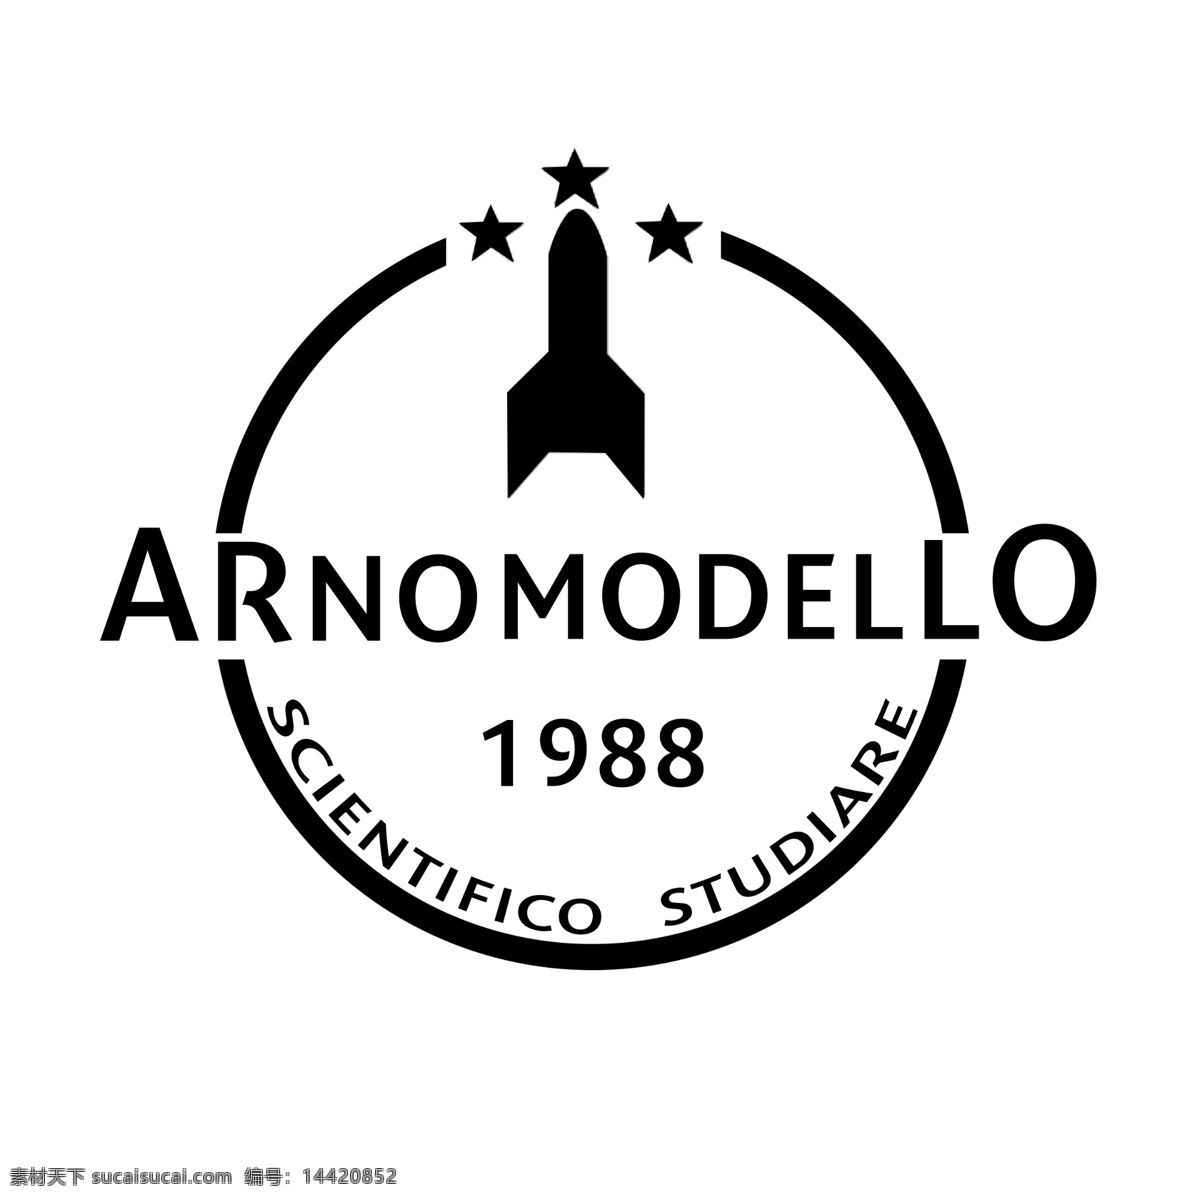 飞机模型 店 logo 意大利语 九十年代 风格